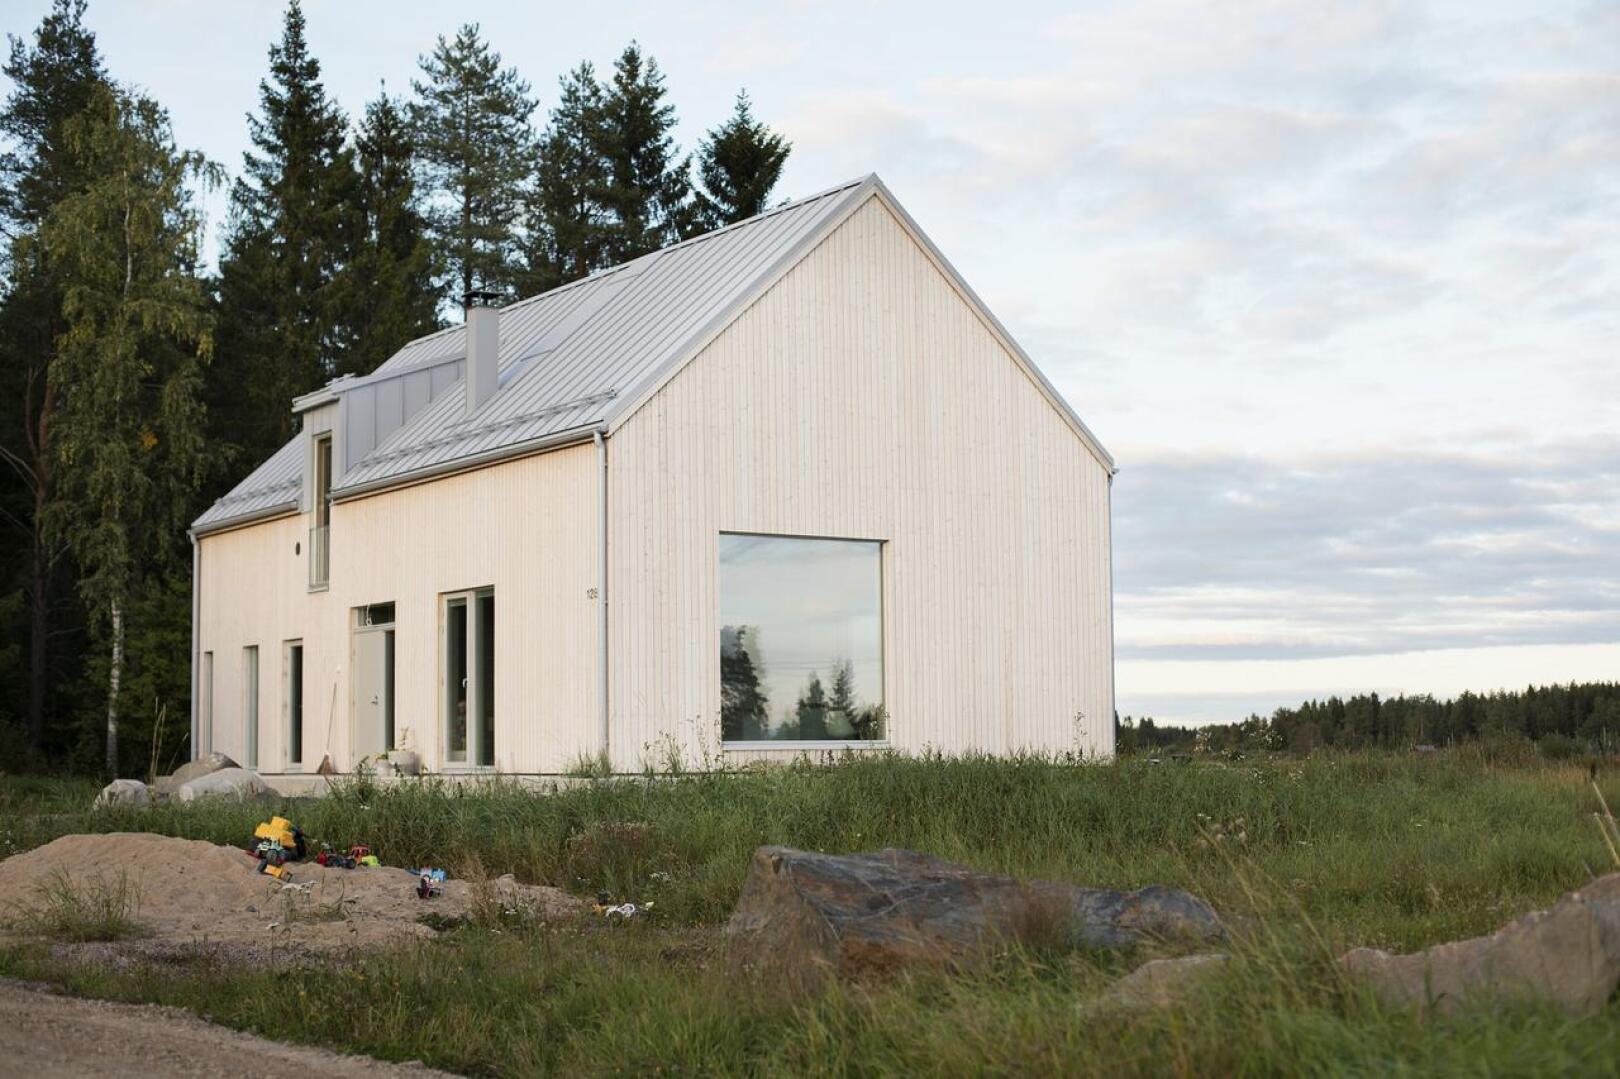 Räystäätön moderni talo on yllätyksellinen näky Alavieskan maalaismaisemassa. Se kuitenkin istuu näkymään hienosti.